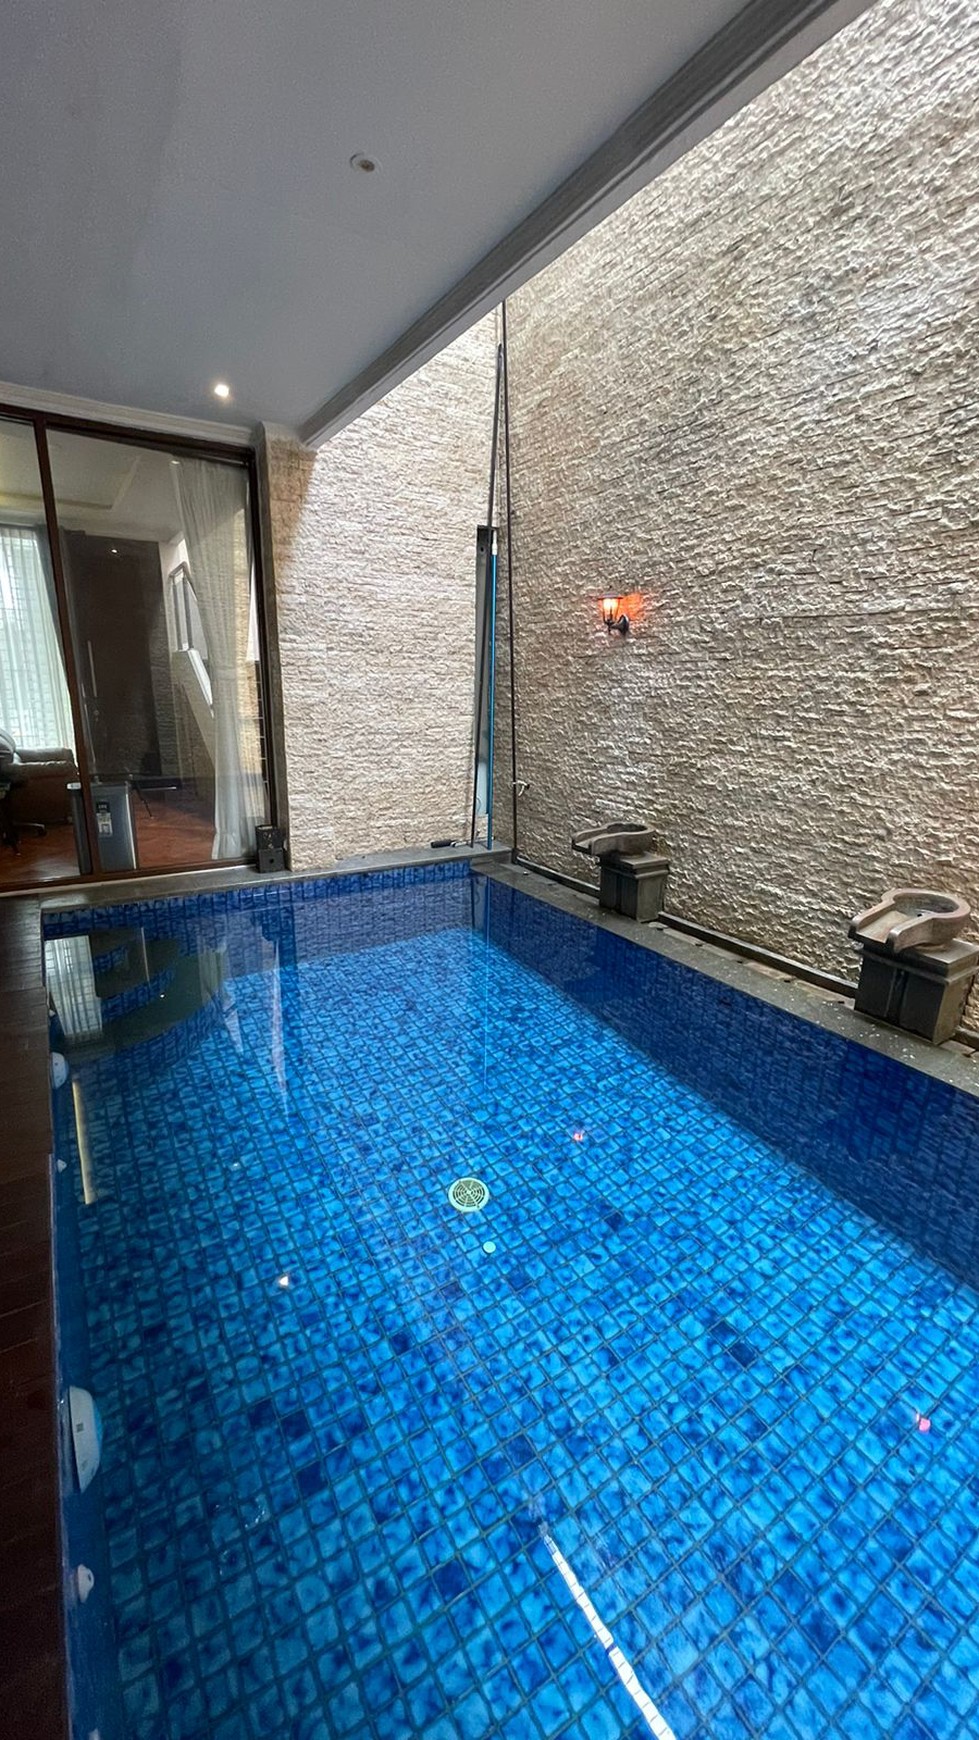 Rumah minimalis modern ada kolam renang, Rapih dengan Kolam renang dalam Cluster Discovery di Bintaro jaya Sektor 9.